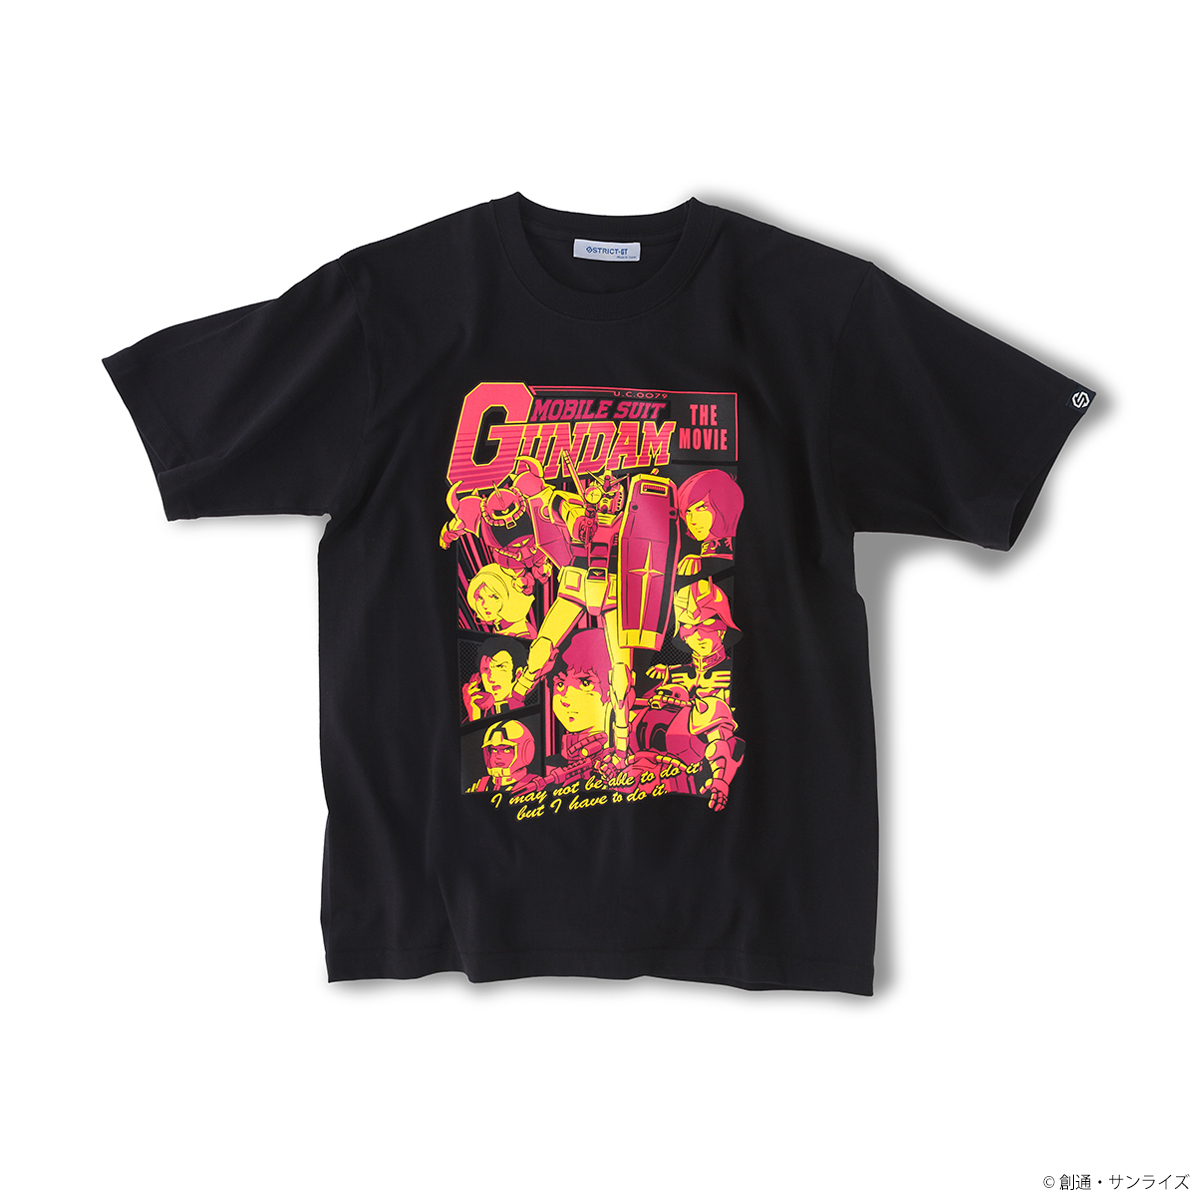 『機動戦士ガンダム』EPISODE Tシャツ 「劇場版 機動戦士ガンダム」